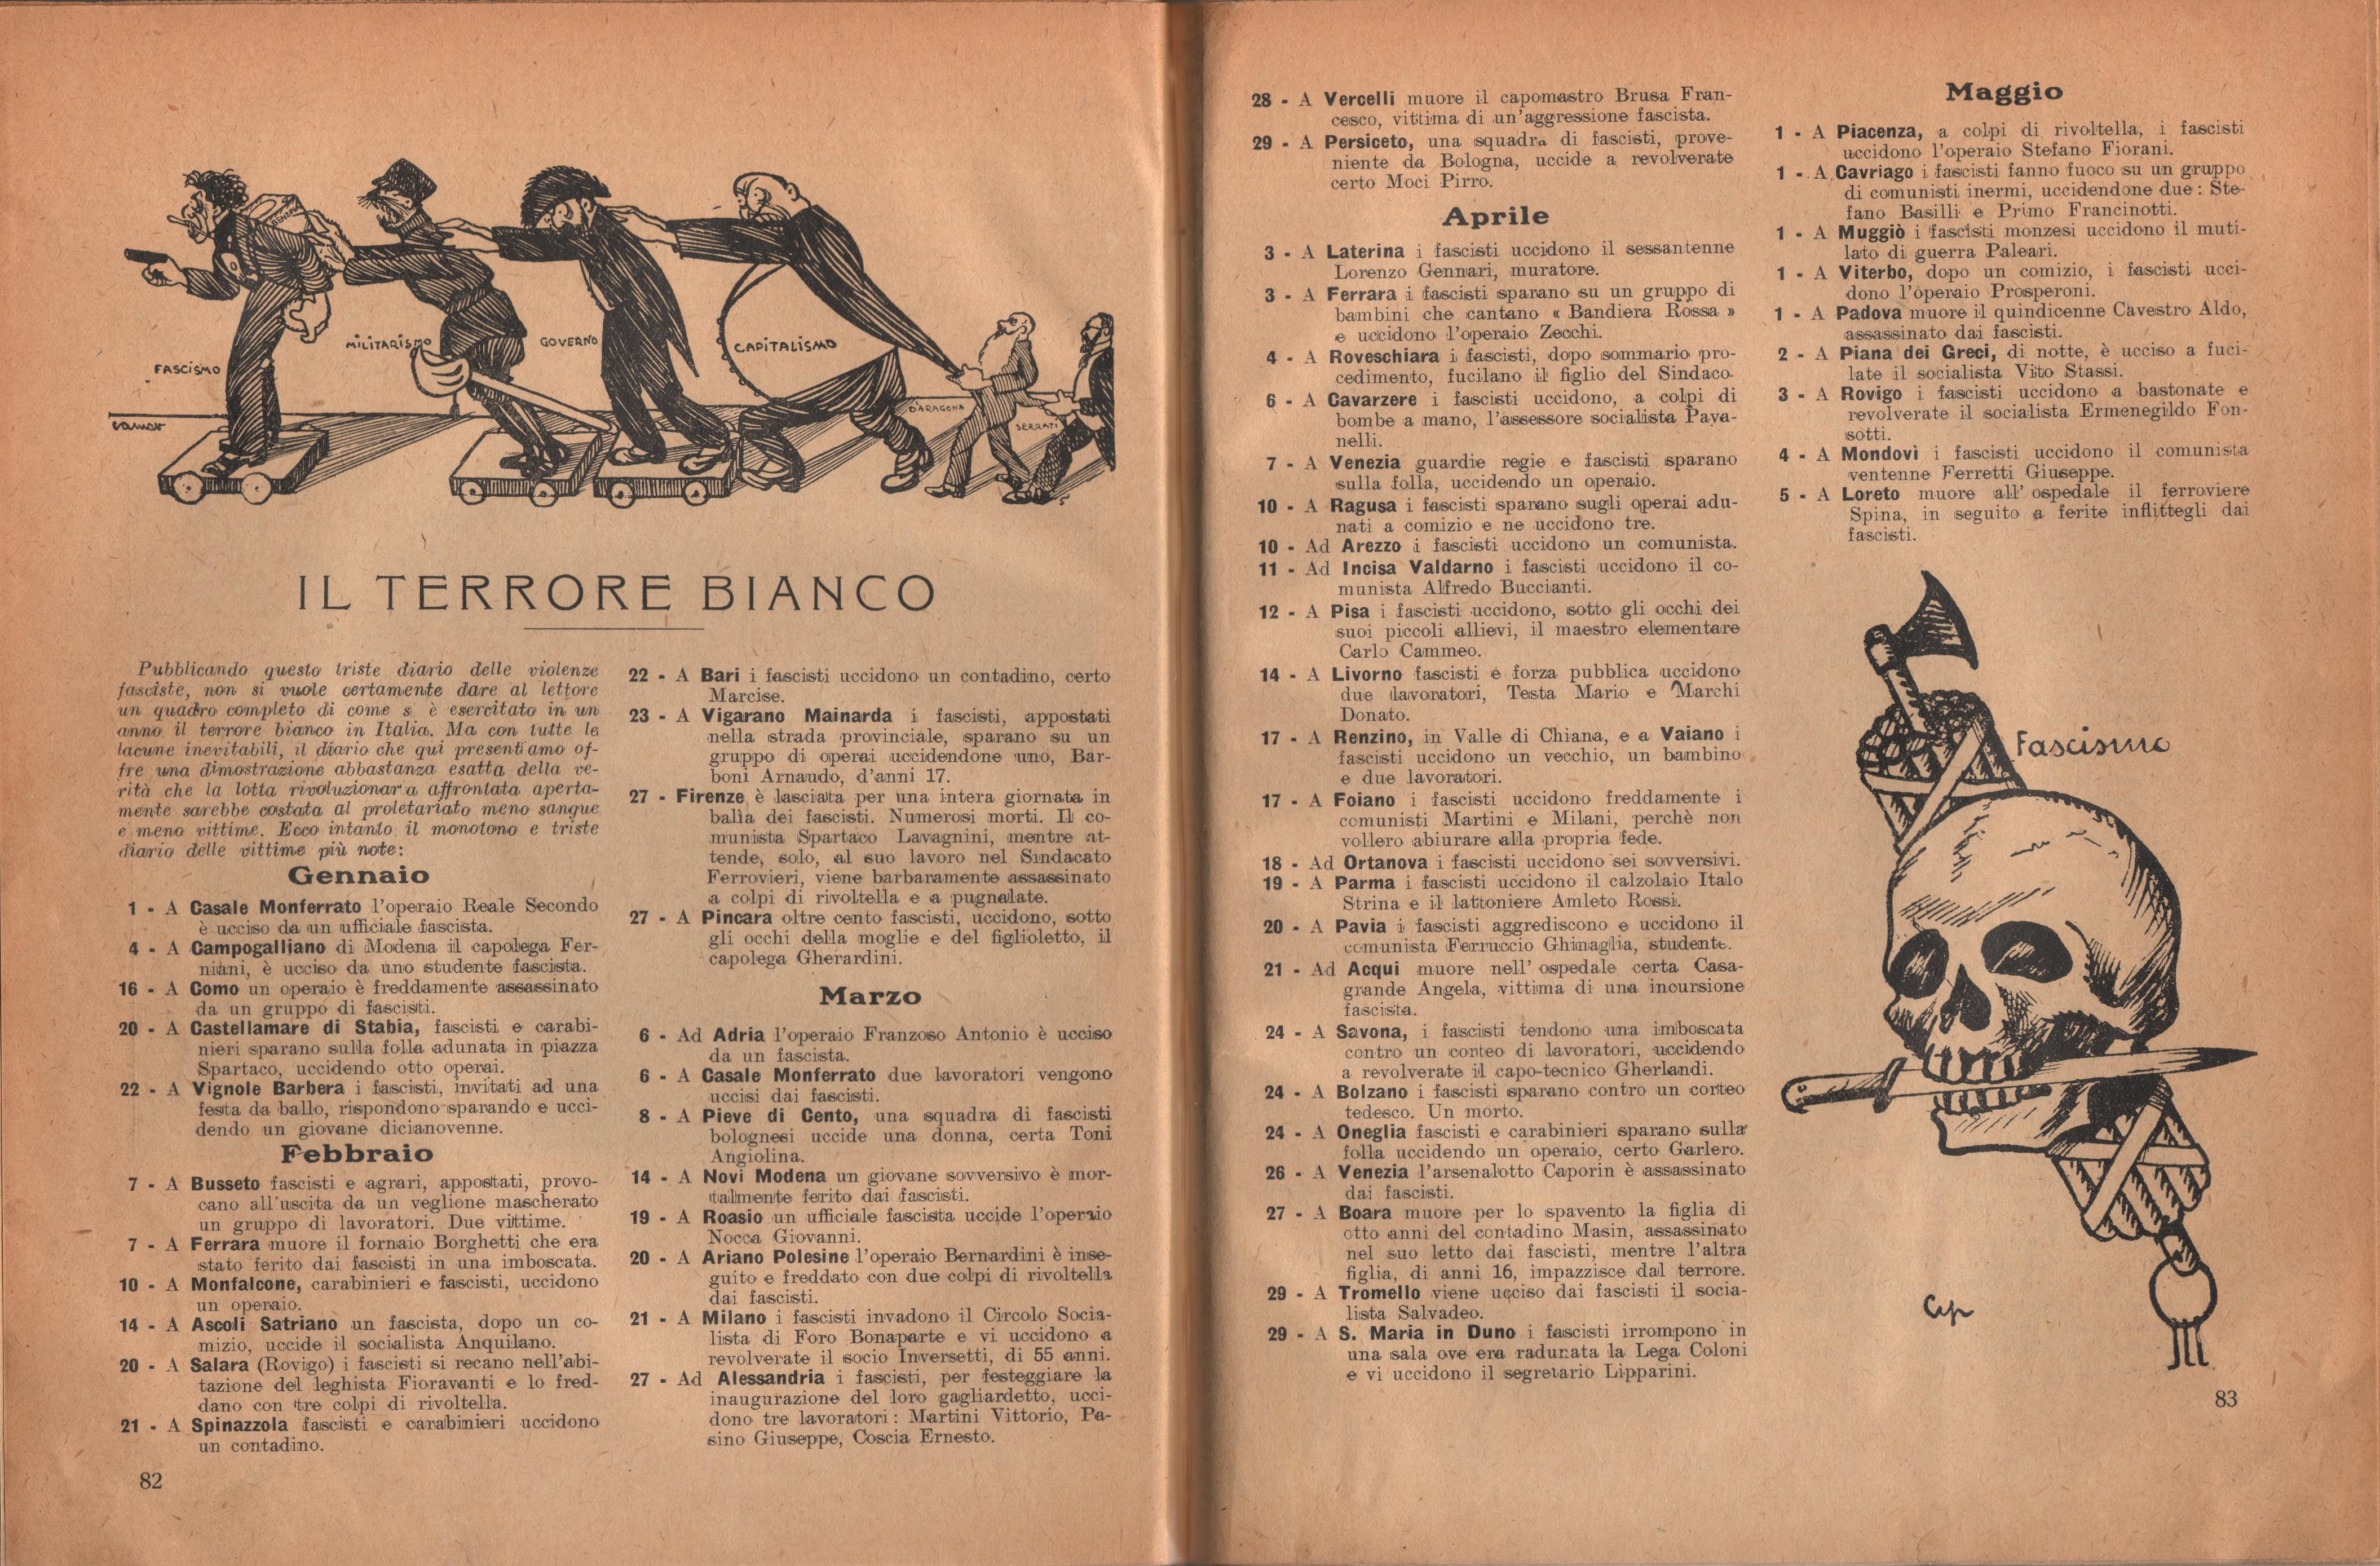 Almanacco comunista 1922 - pag. 50